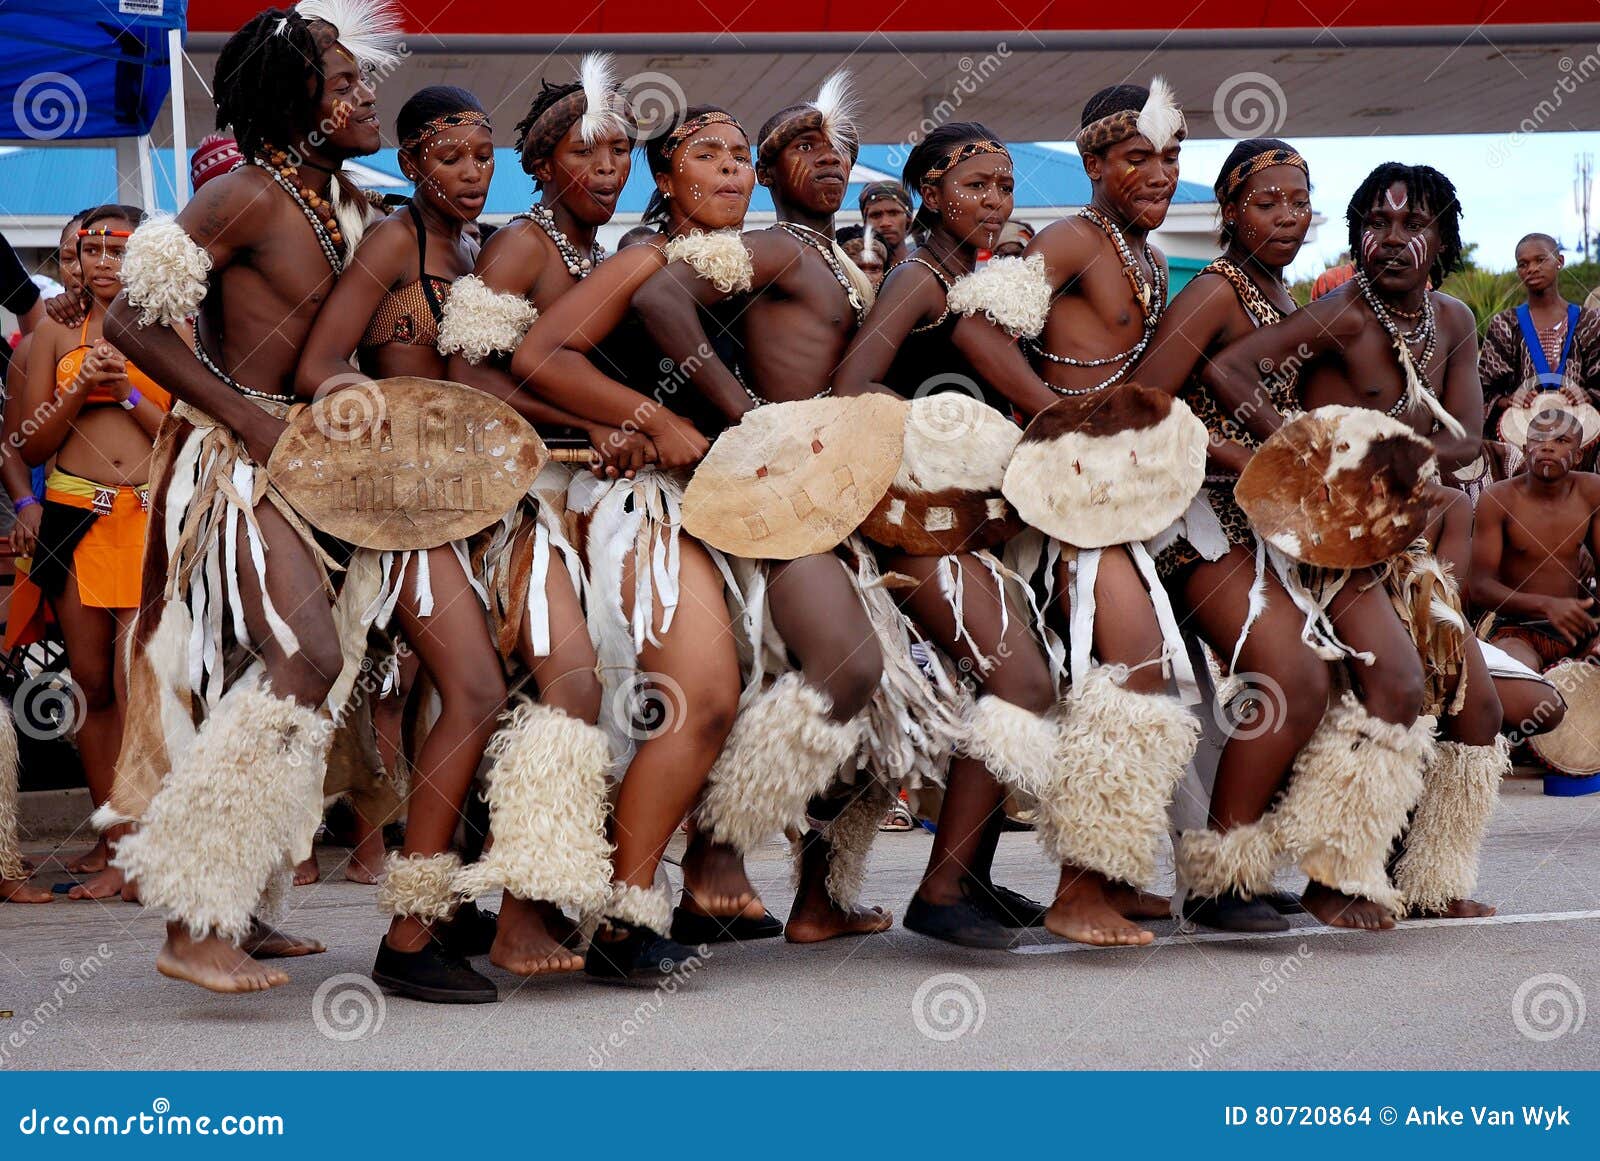 Culture dance zulu 